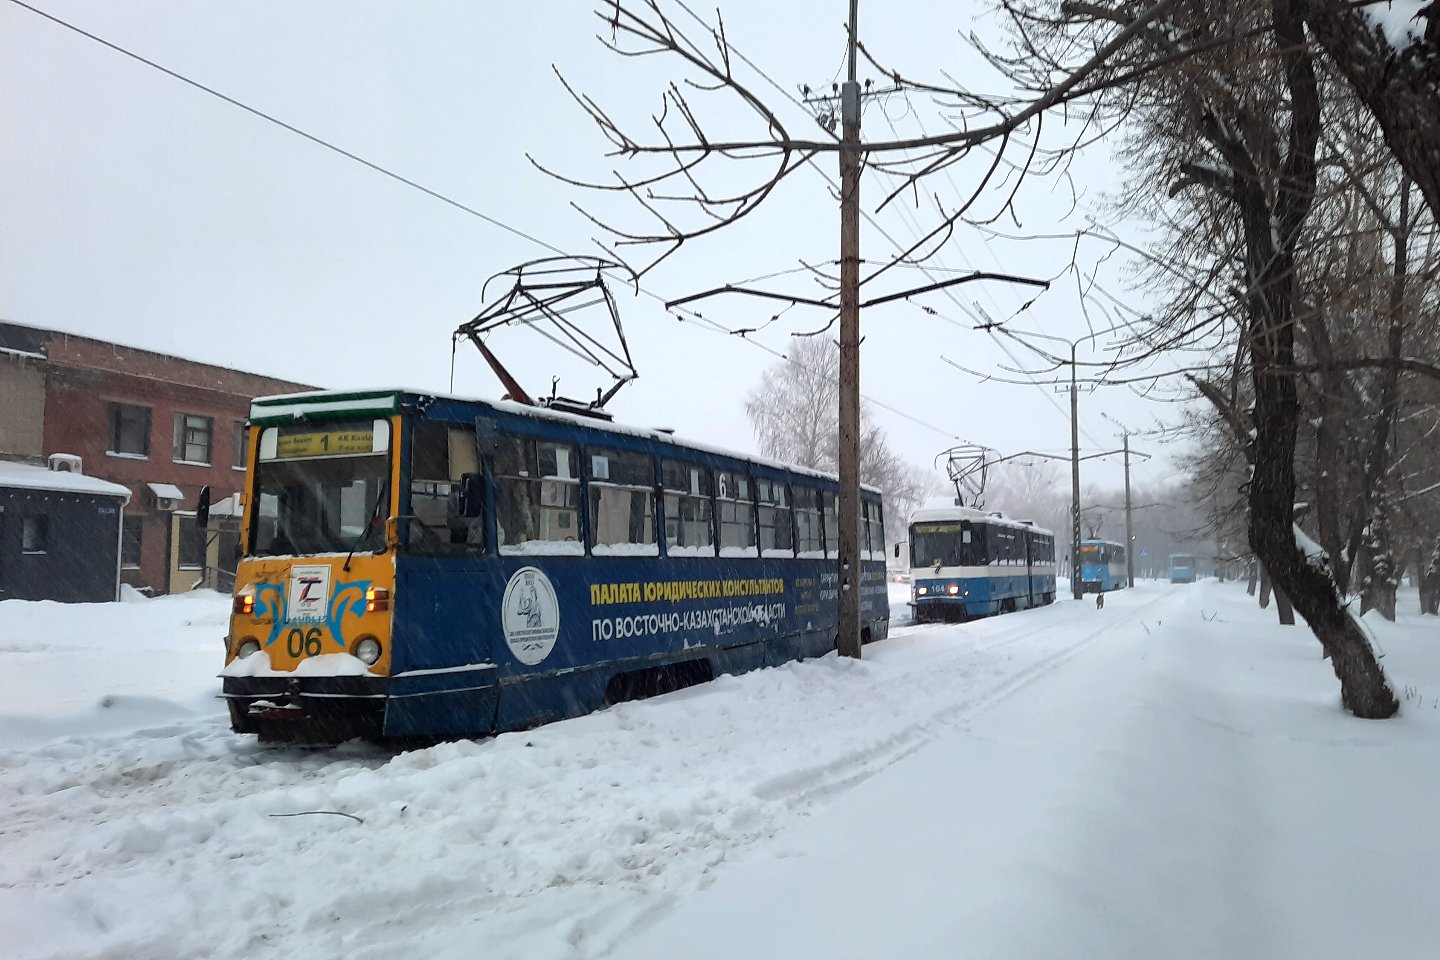 Усть-Каменогорск и ВКО / Трамвайное движение остановилось в Усть-Каменогорске бүгін утром